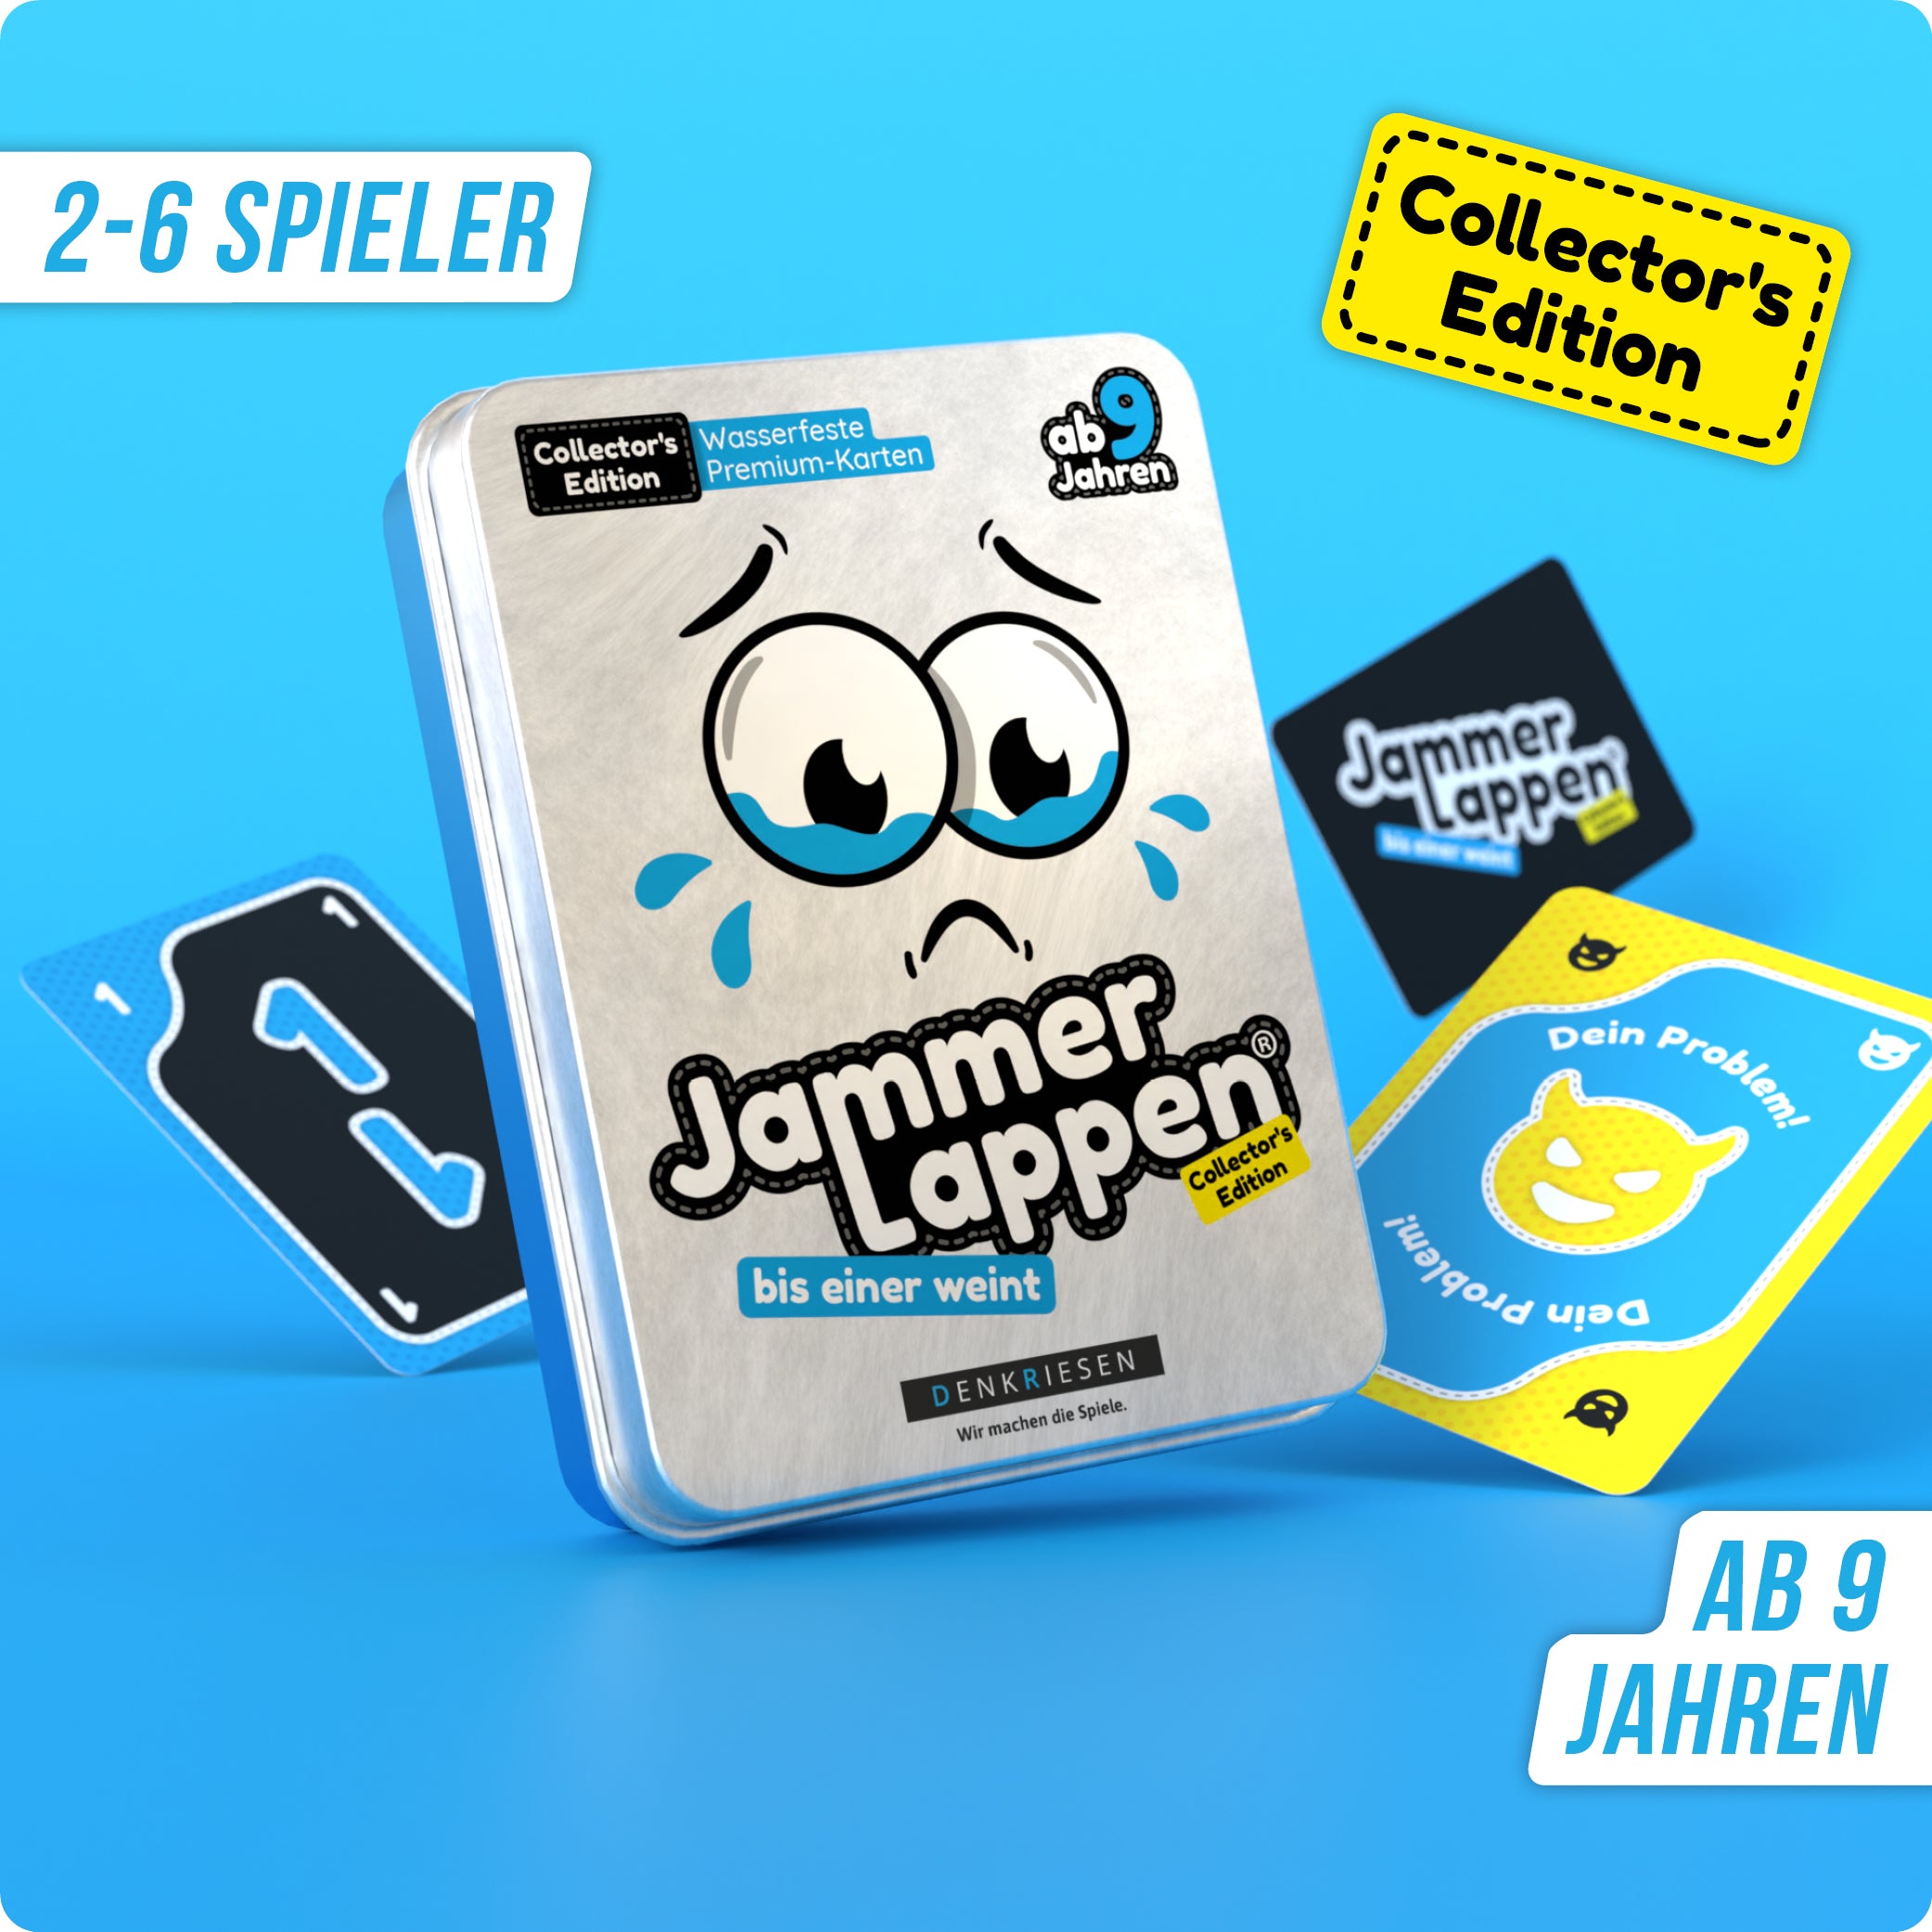 JAMMERLAPPEN® | Collector's Edition – "Bis einer weint." | Wasserfest